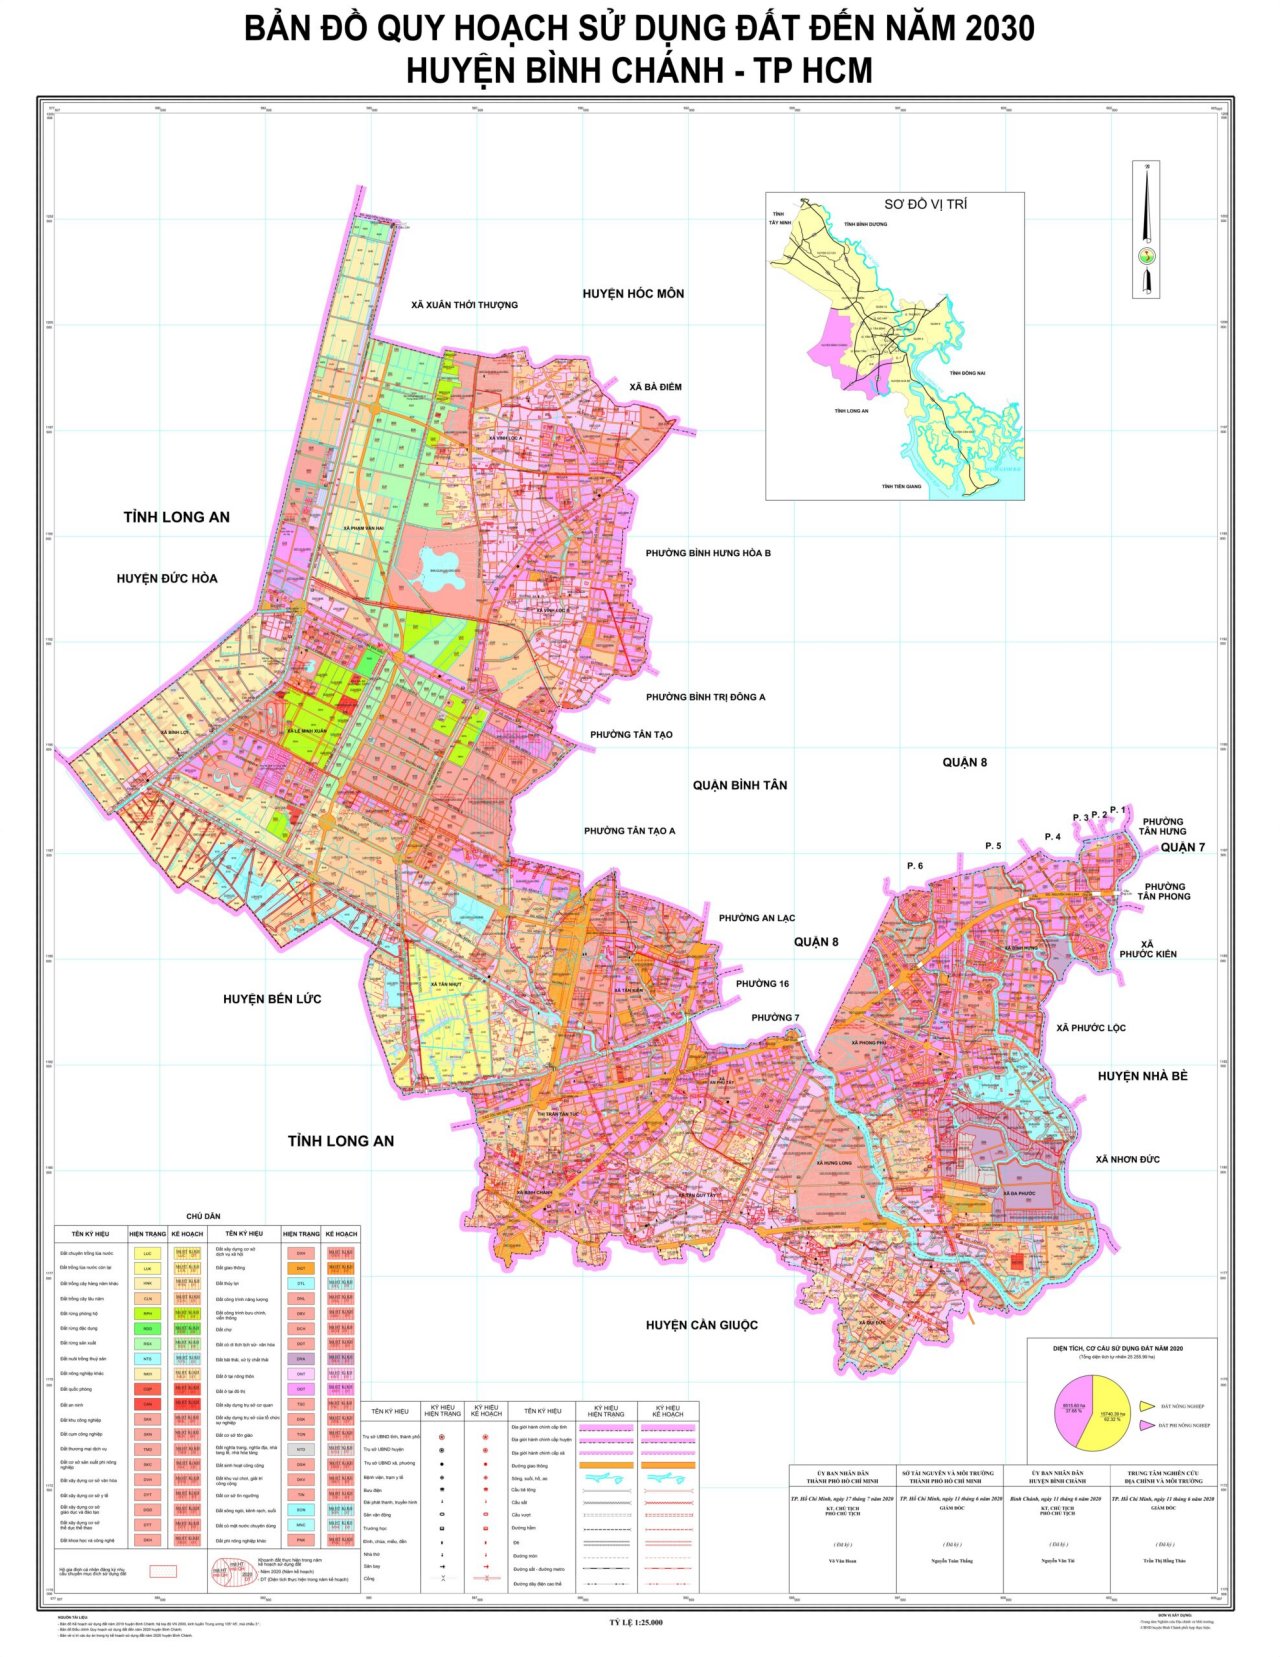 Bản đồ quy hoạch sử dụng đất đến năm 2030 huyện Bình Chánh